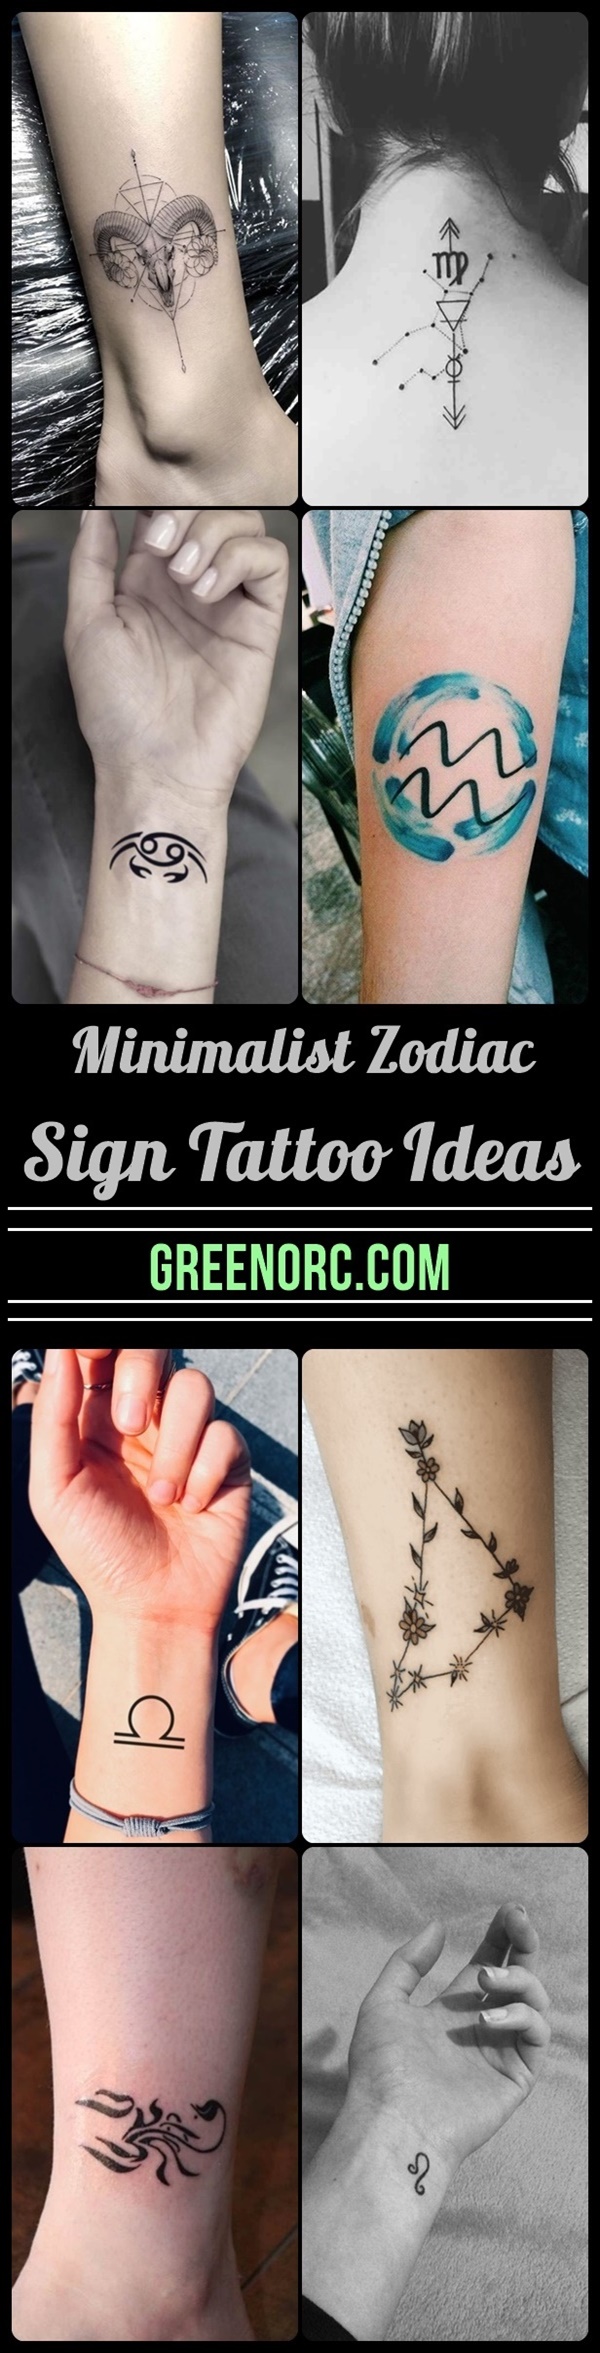 40 Minimalist Zodiac Sign Tattoo Ideas - Greenorc